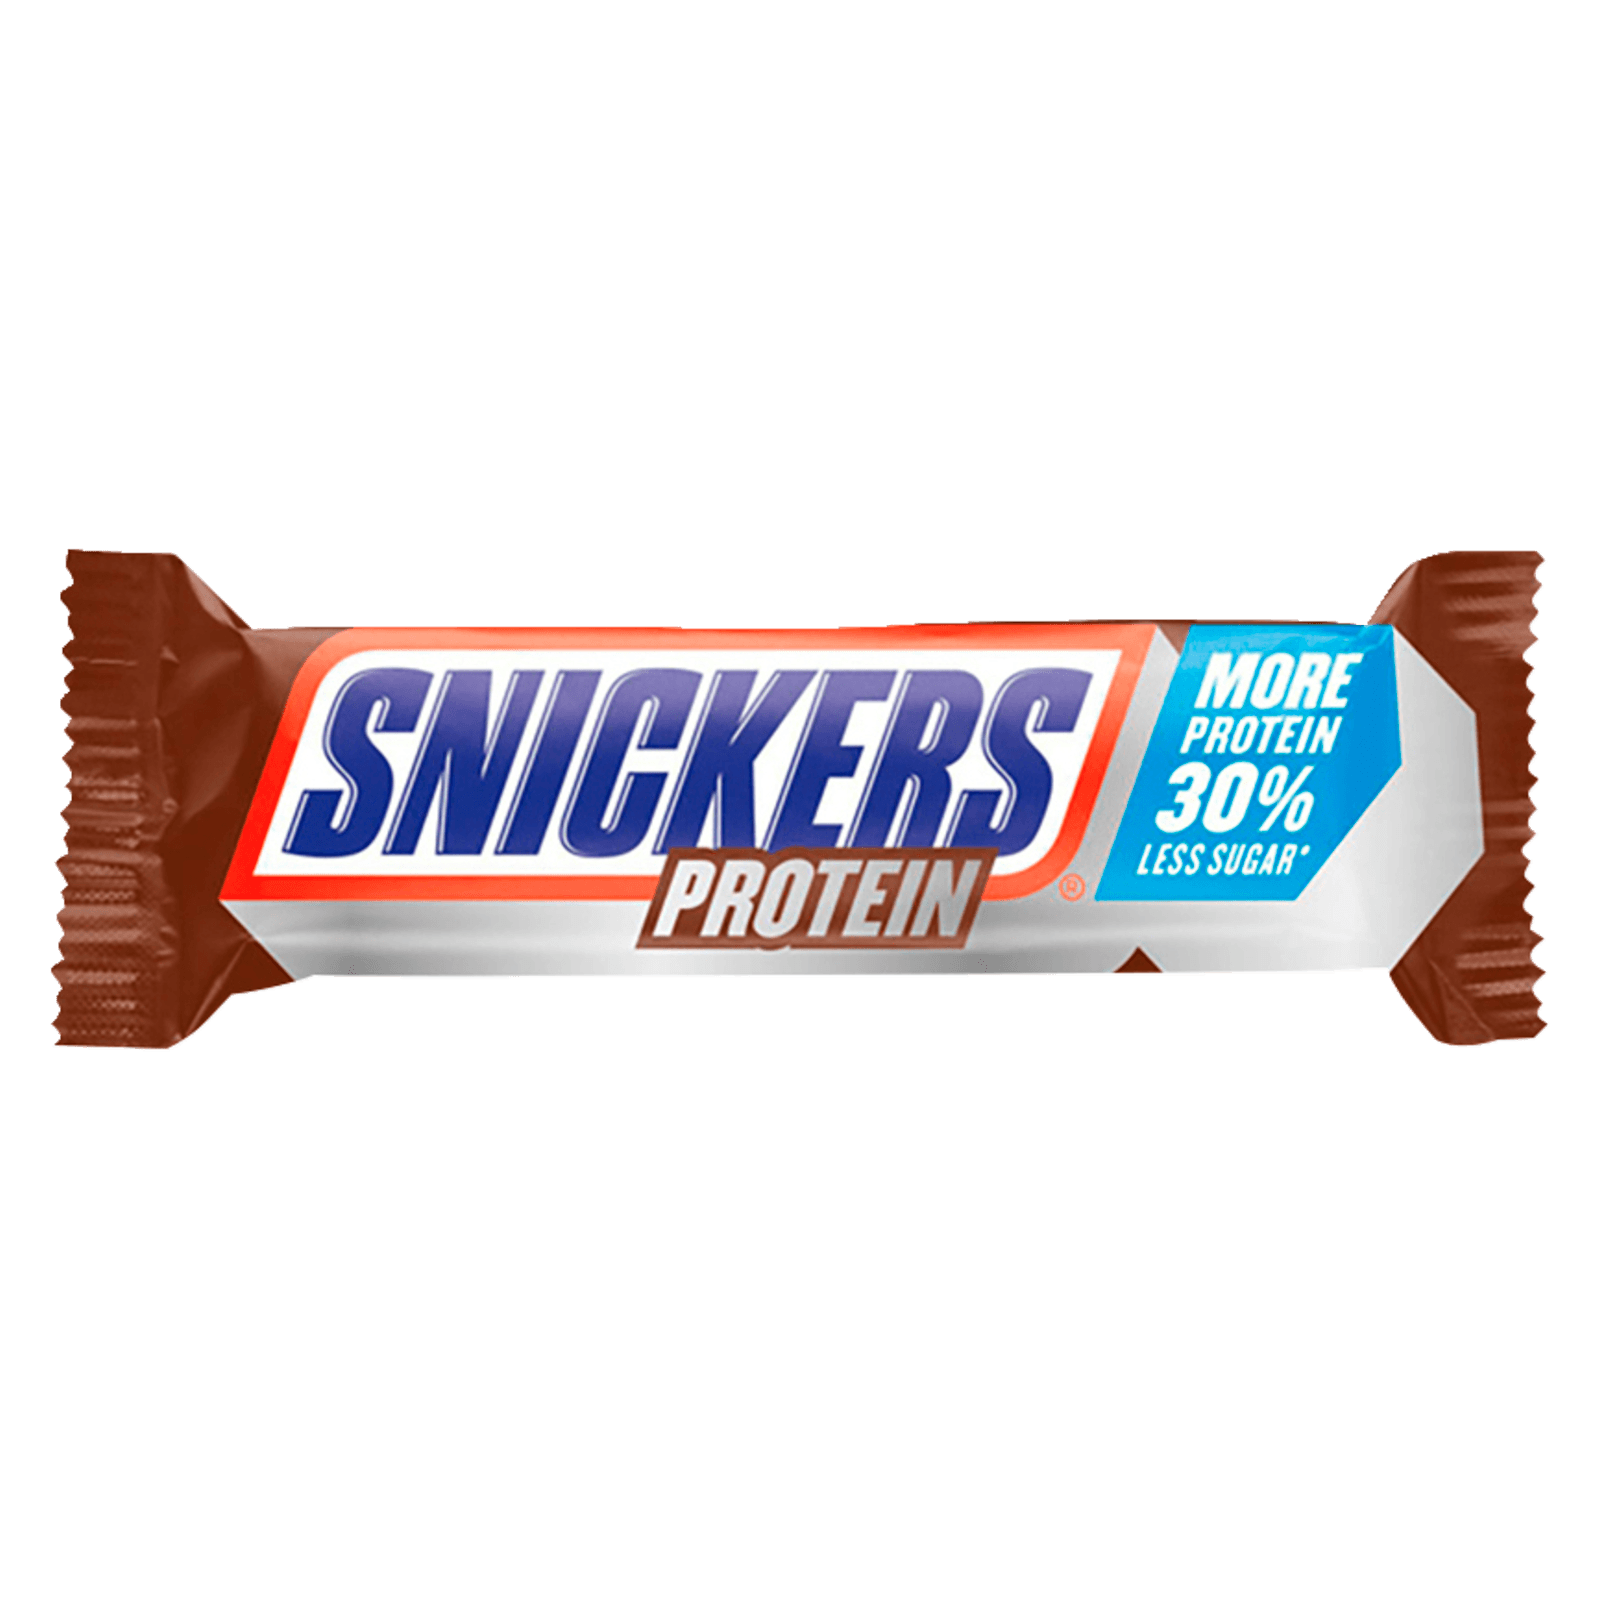 Шоколадка сникерс с именами. Mars Protein Bar 50g. Snickers протеин. Snickers Protein Bar. Протеиновый батончик типа Сникерс.